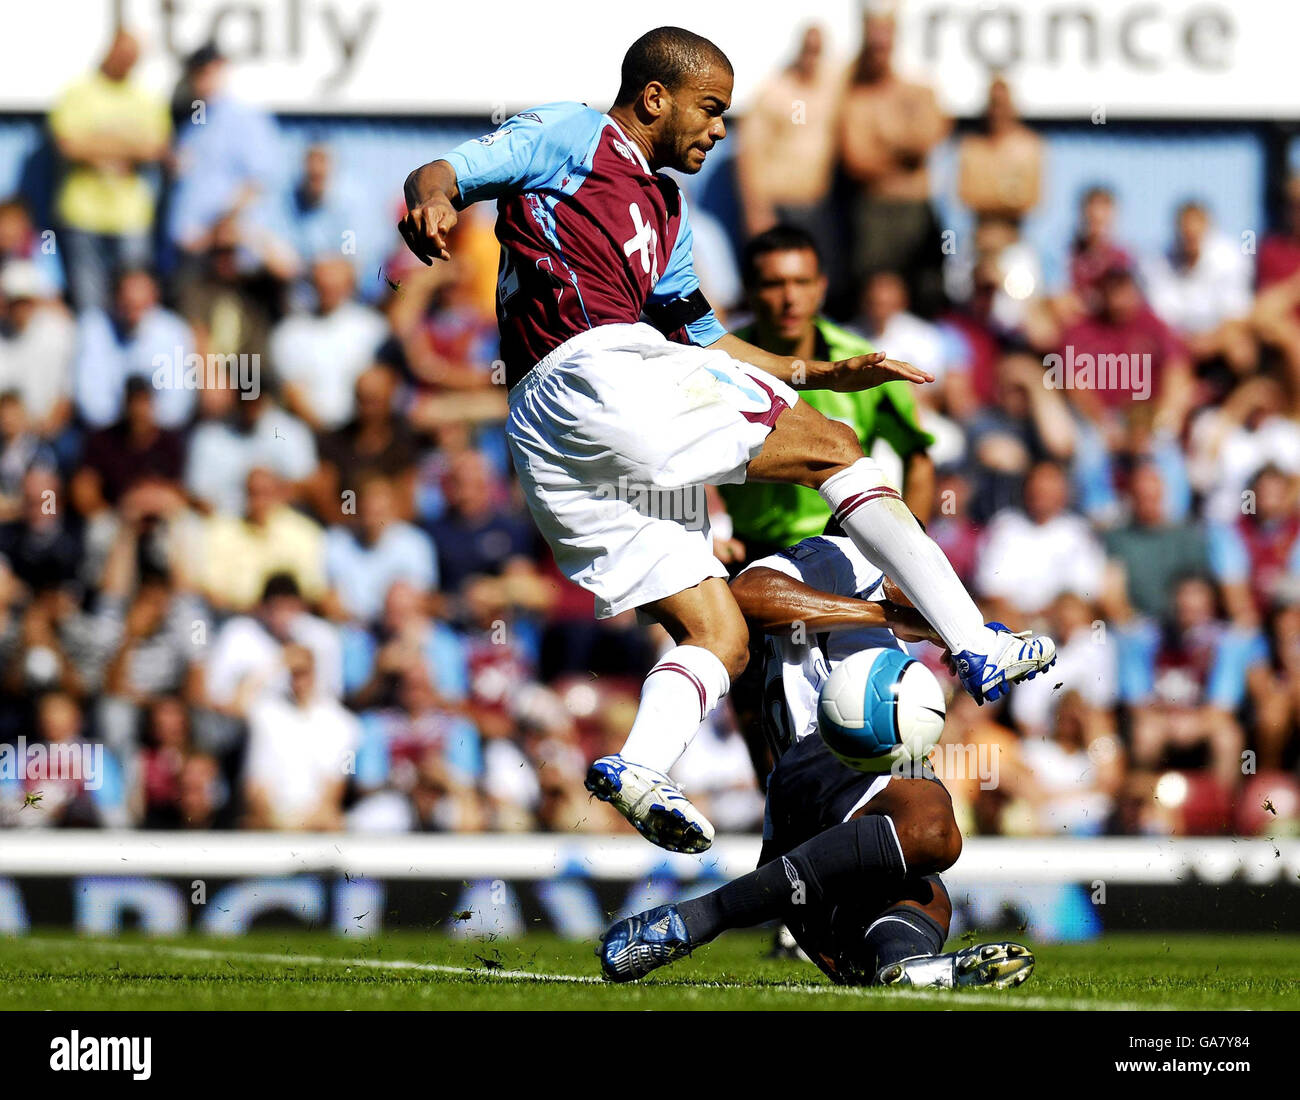 Fútbol - Barclays Premier League - West Ham United v Wigan Athletic - Upton Park Foto de stock